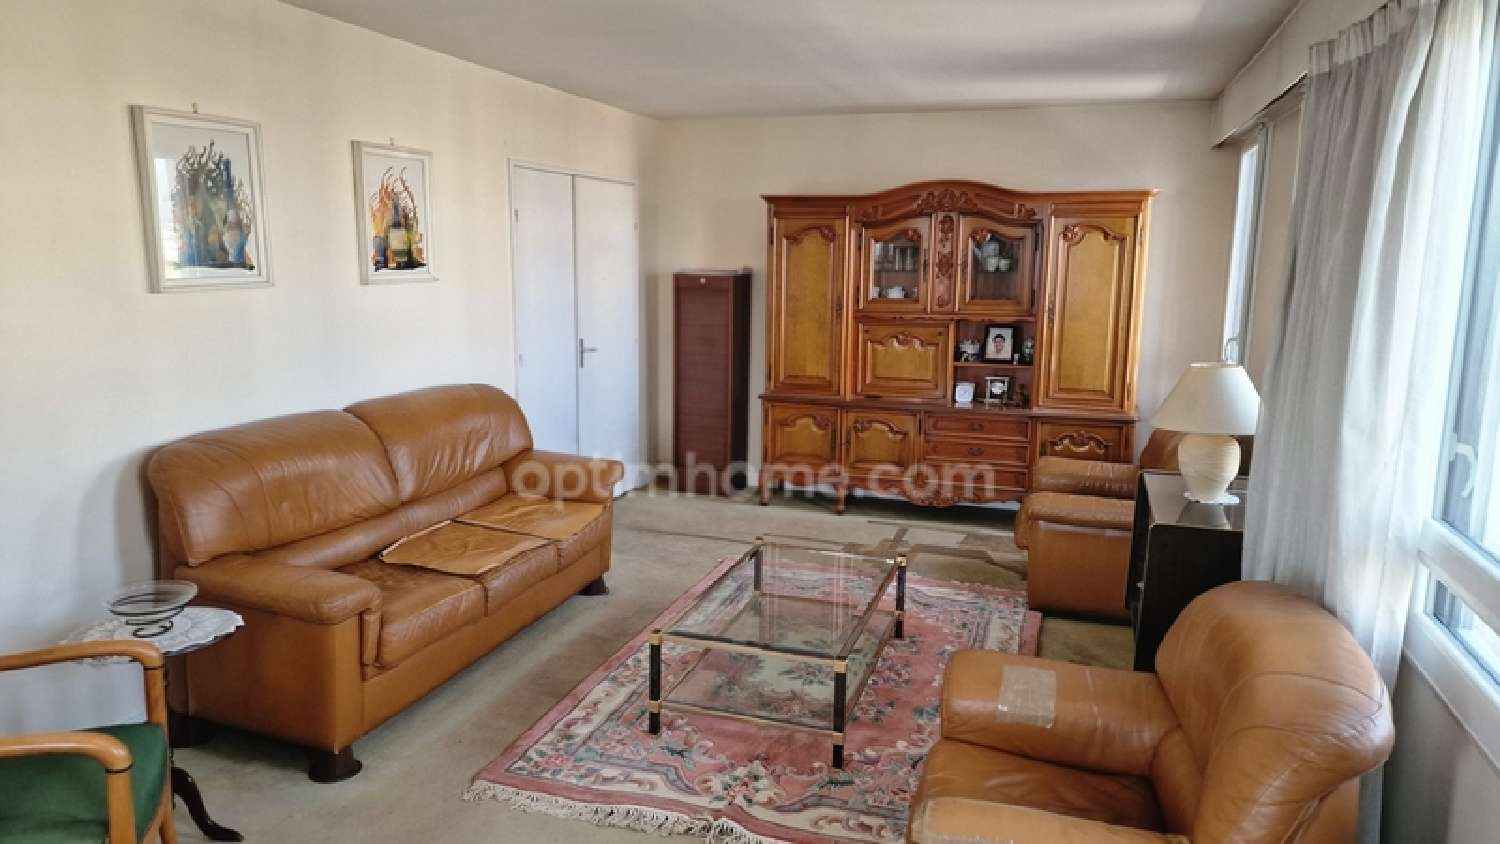  for sale apartment Sarcelles Val-d'Oise 1